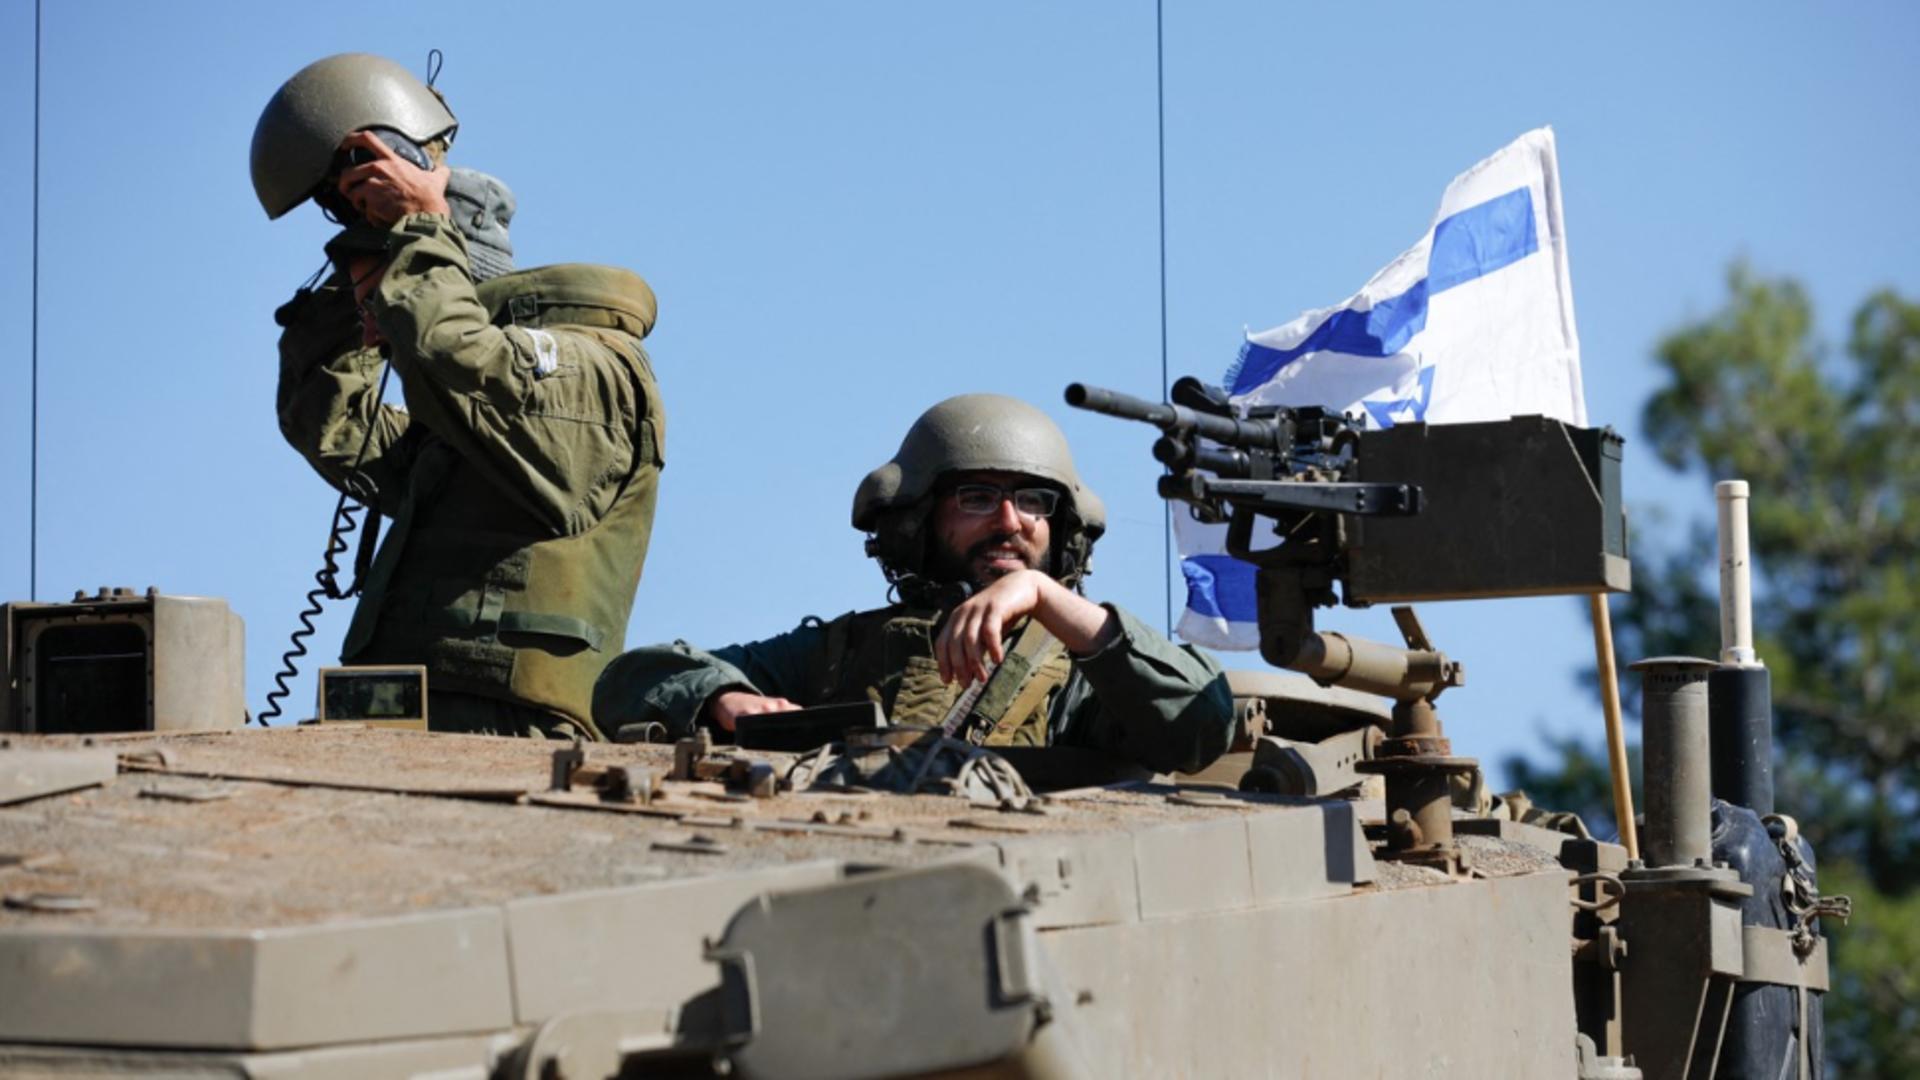 Neînțelegeri în Israel. De ce întârzie guvernul de la Tel Aviv să dea ordin armatei pentru a invada Gaza